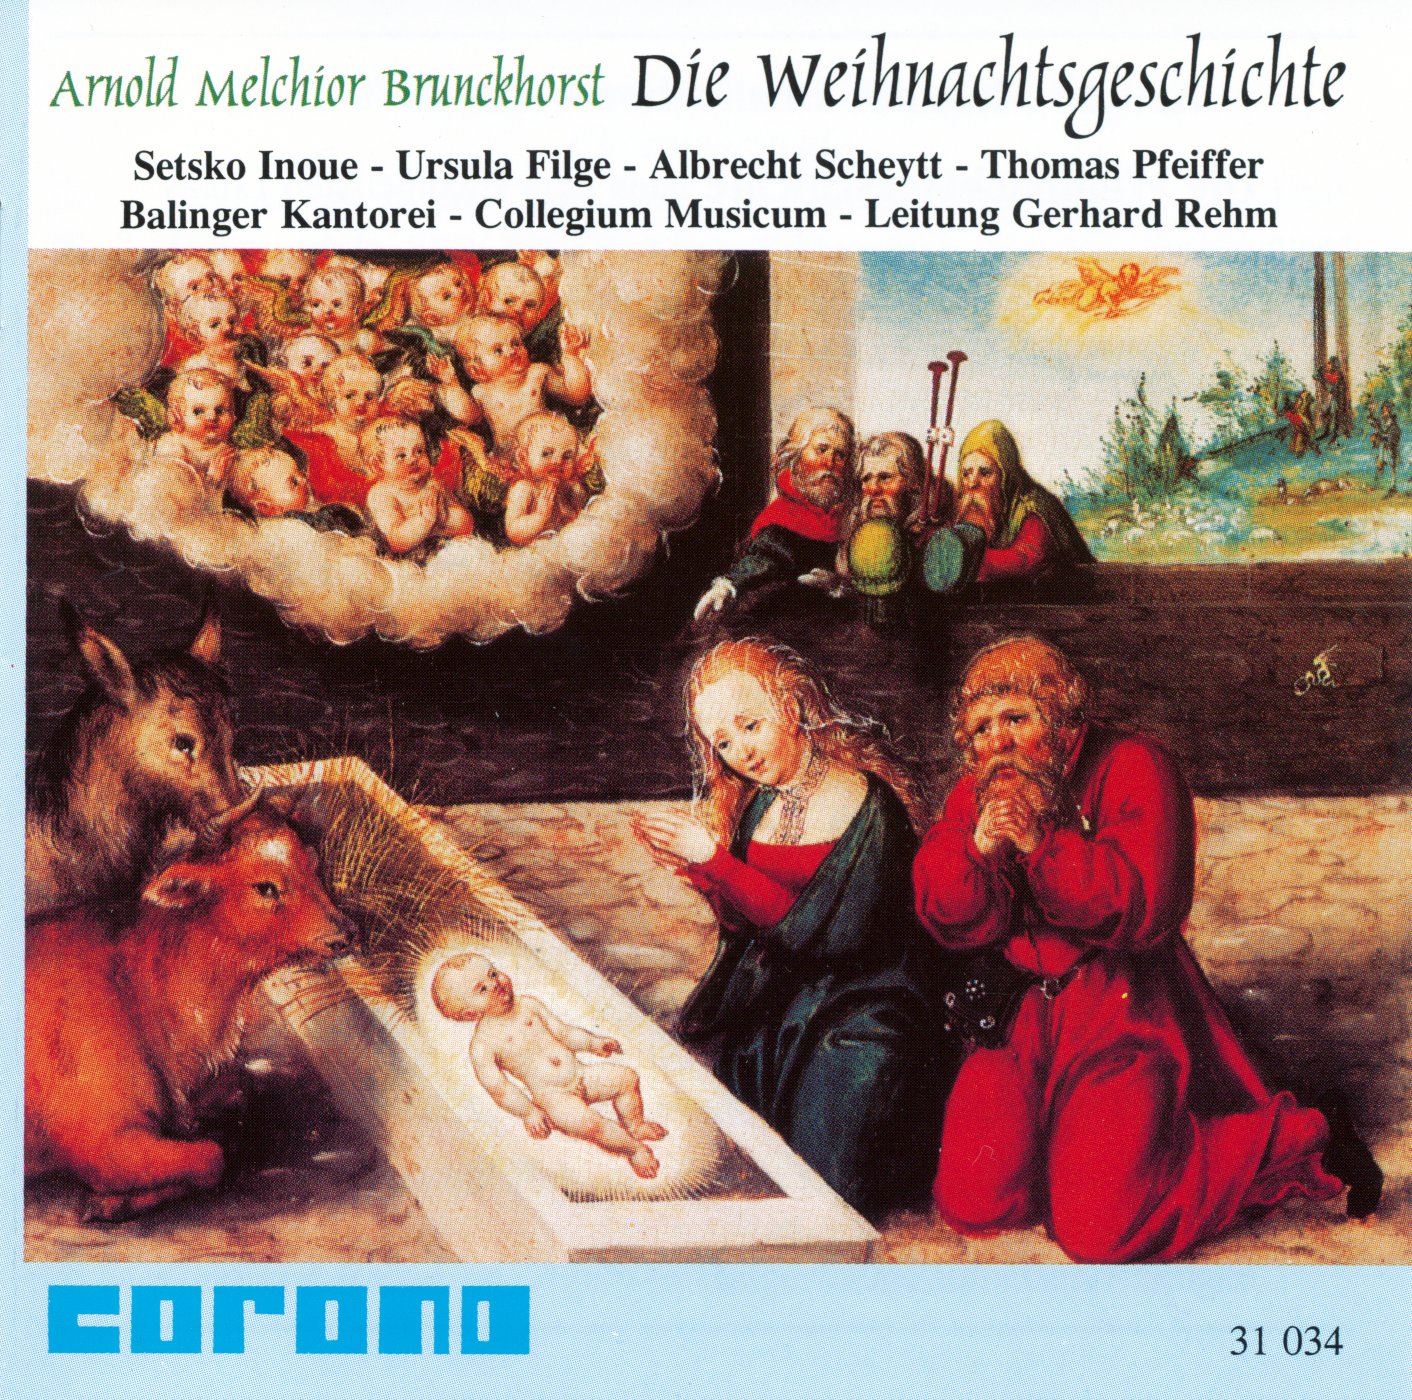 Arnold Melchior Brunckhorst - Die Weihnachtsgeschichte